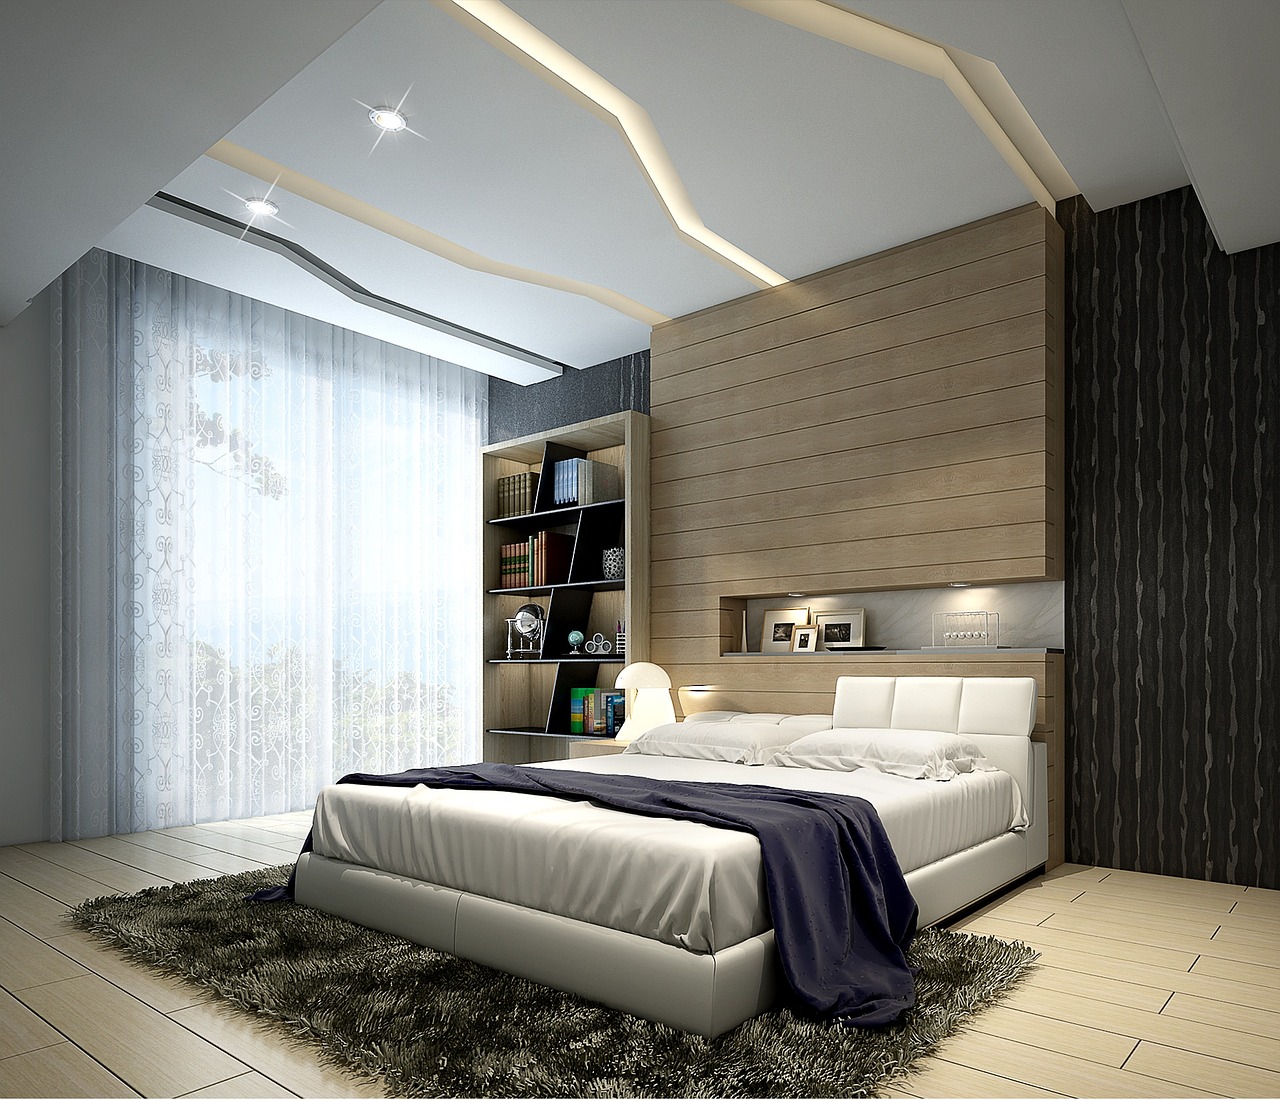 Bedroom Interior Design Basics for the Beginner